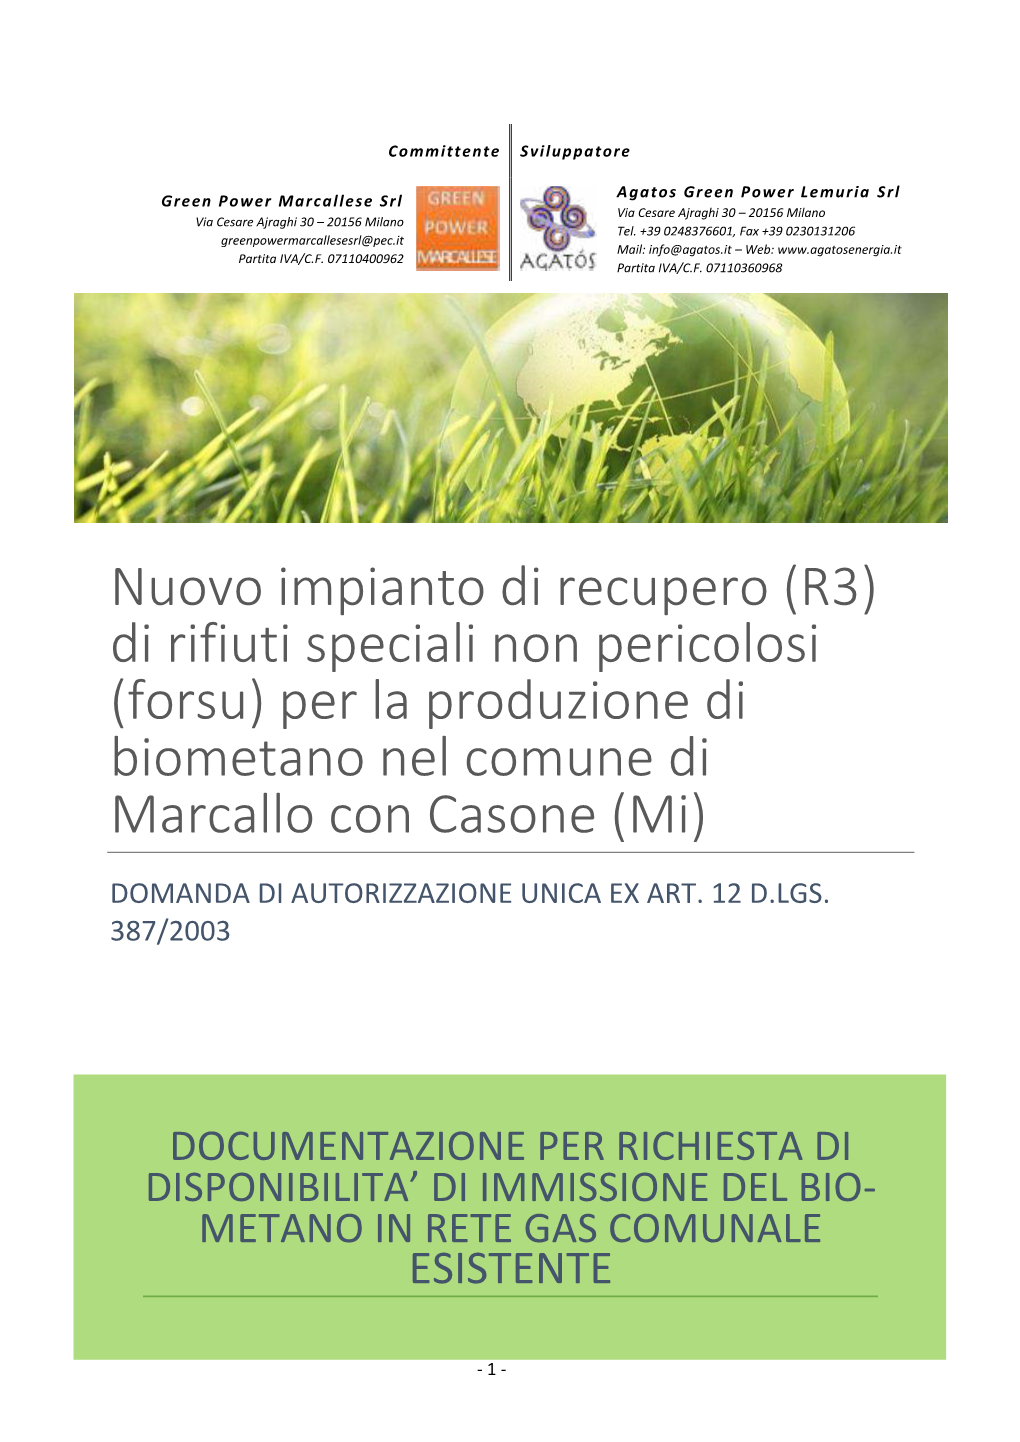 Nuovo Impianto Di Recupero (R3) Di Rifiuti Speciali Non Pericolosi (Forsu) Per La Produzione Di Biometano Nel Comune Di Marcallo Con Casone (Mi)